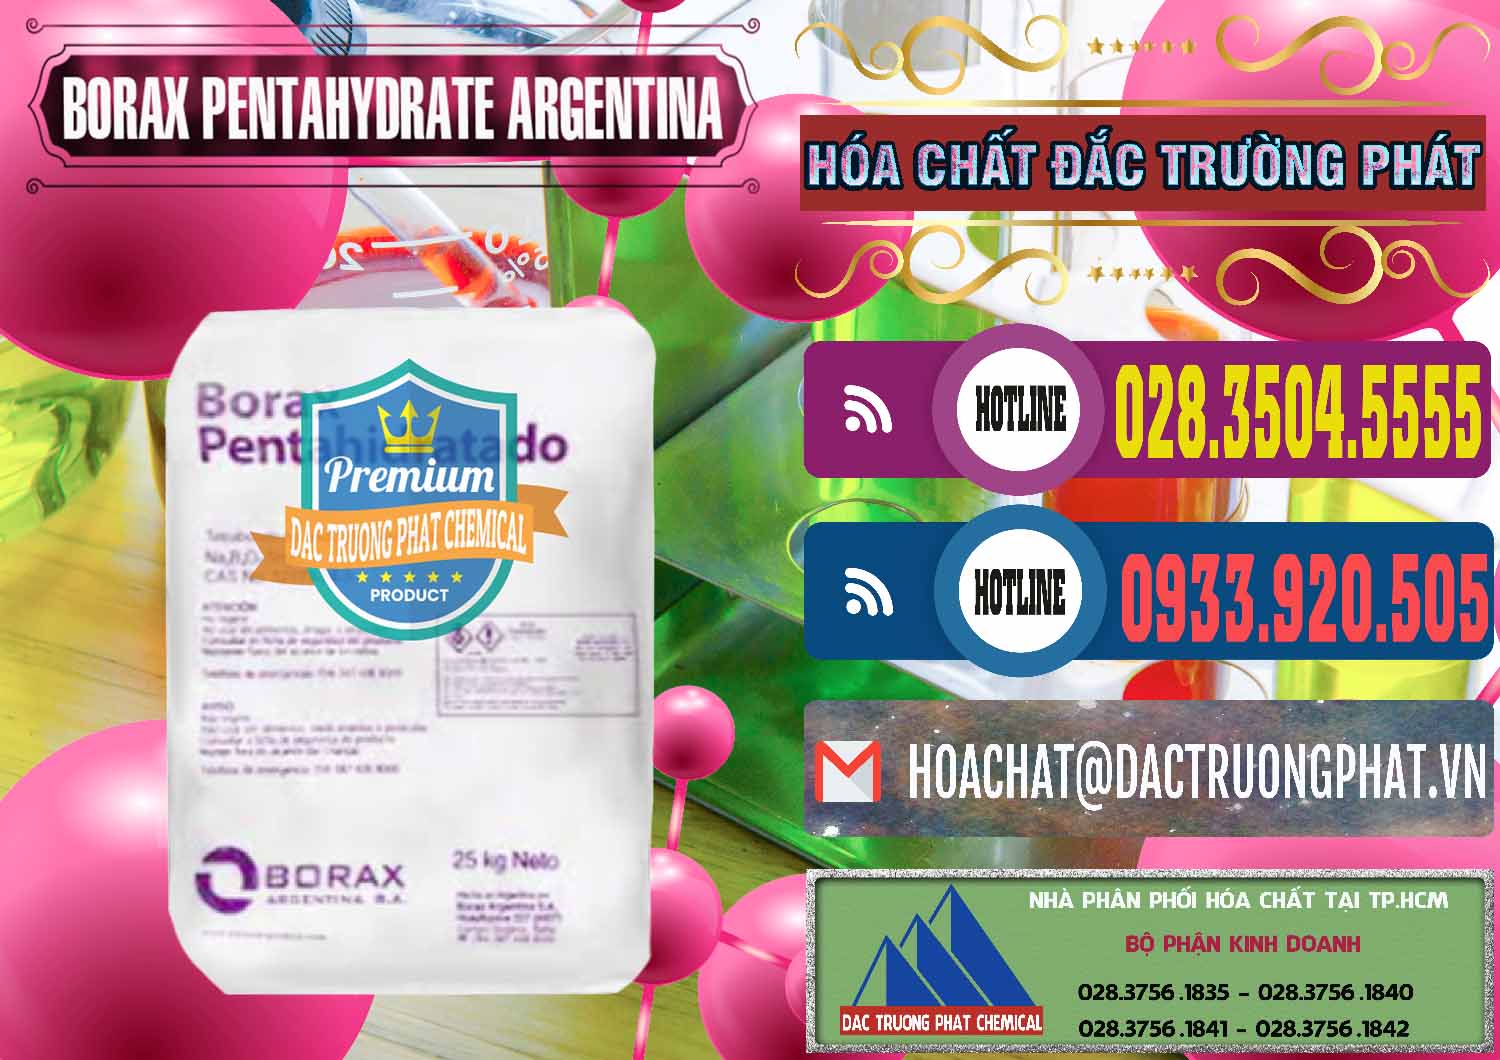 Đơn vị chuyên bán - phân phối Borax Pentahydrate Argentina - 0447 - Cung cấp & bán hóa chất tại TP.HCM - muabanhoachat.com.vn